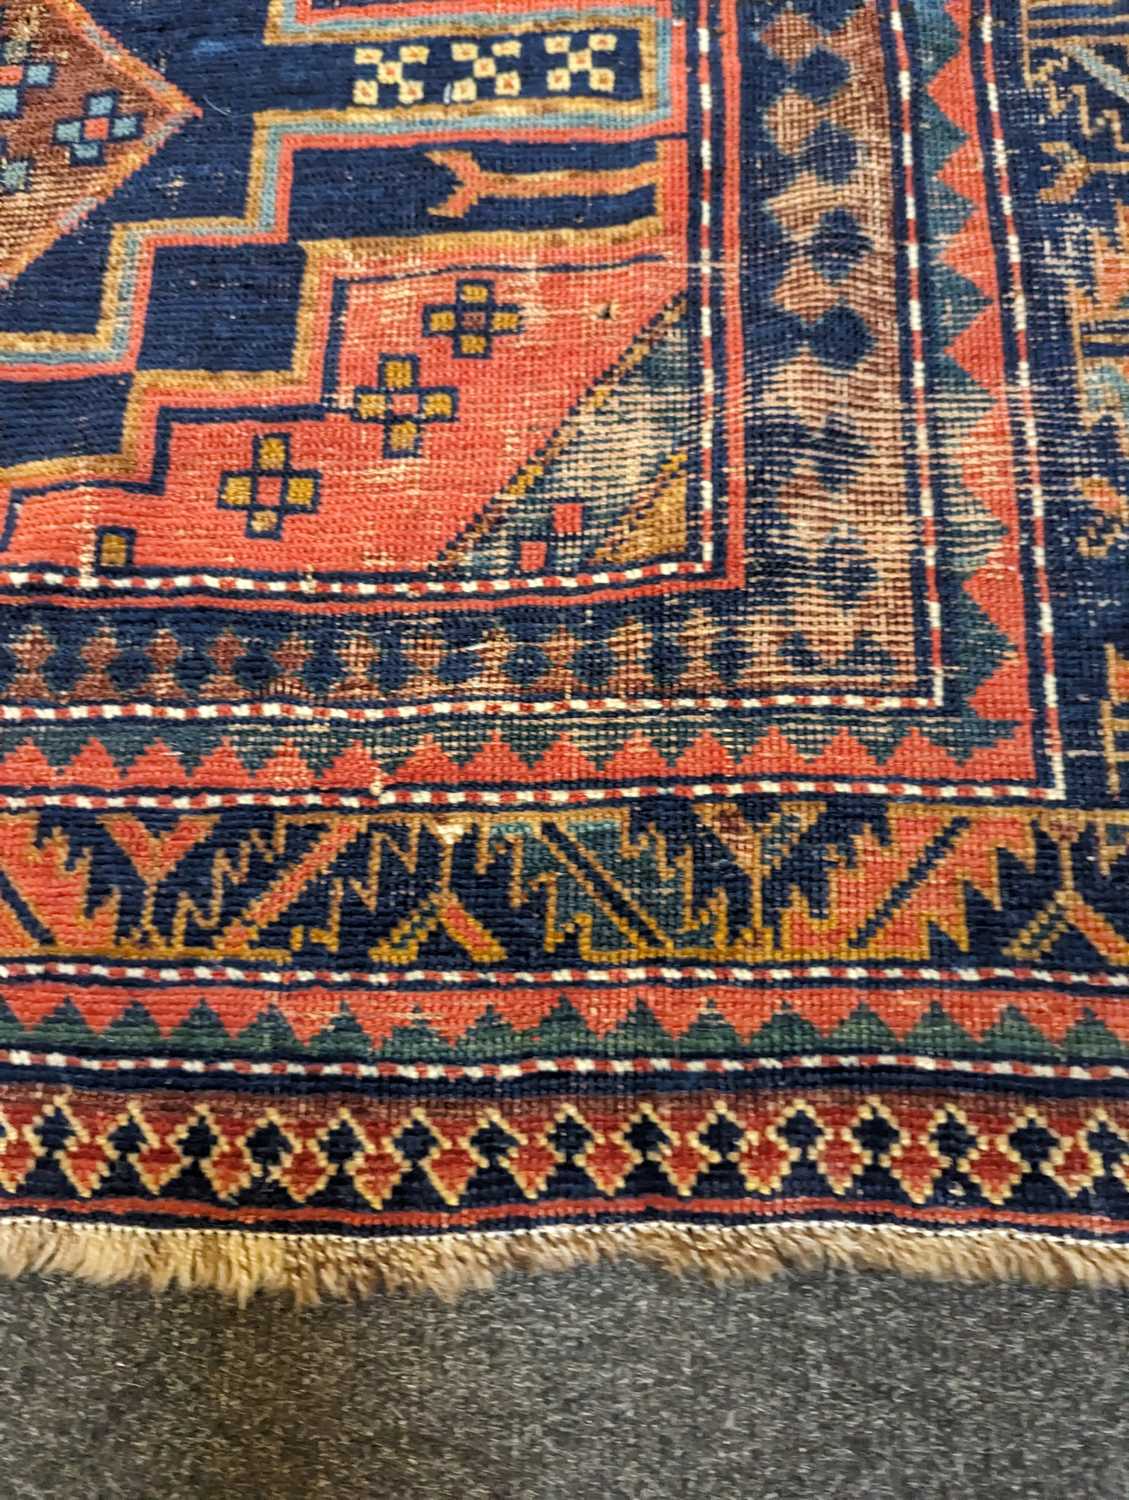 A Kazak wool rug - Image 20 of 49